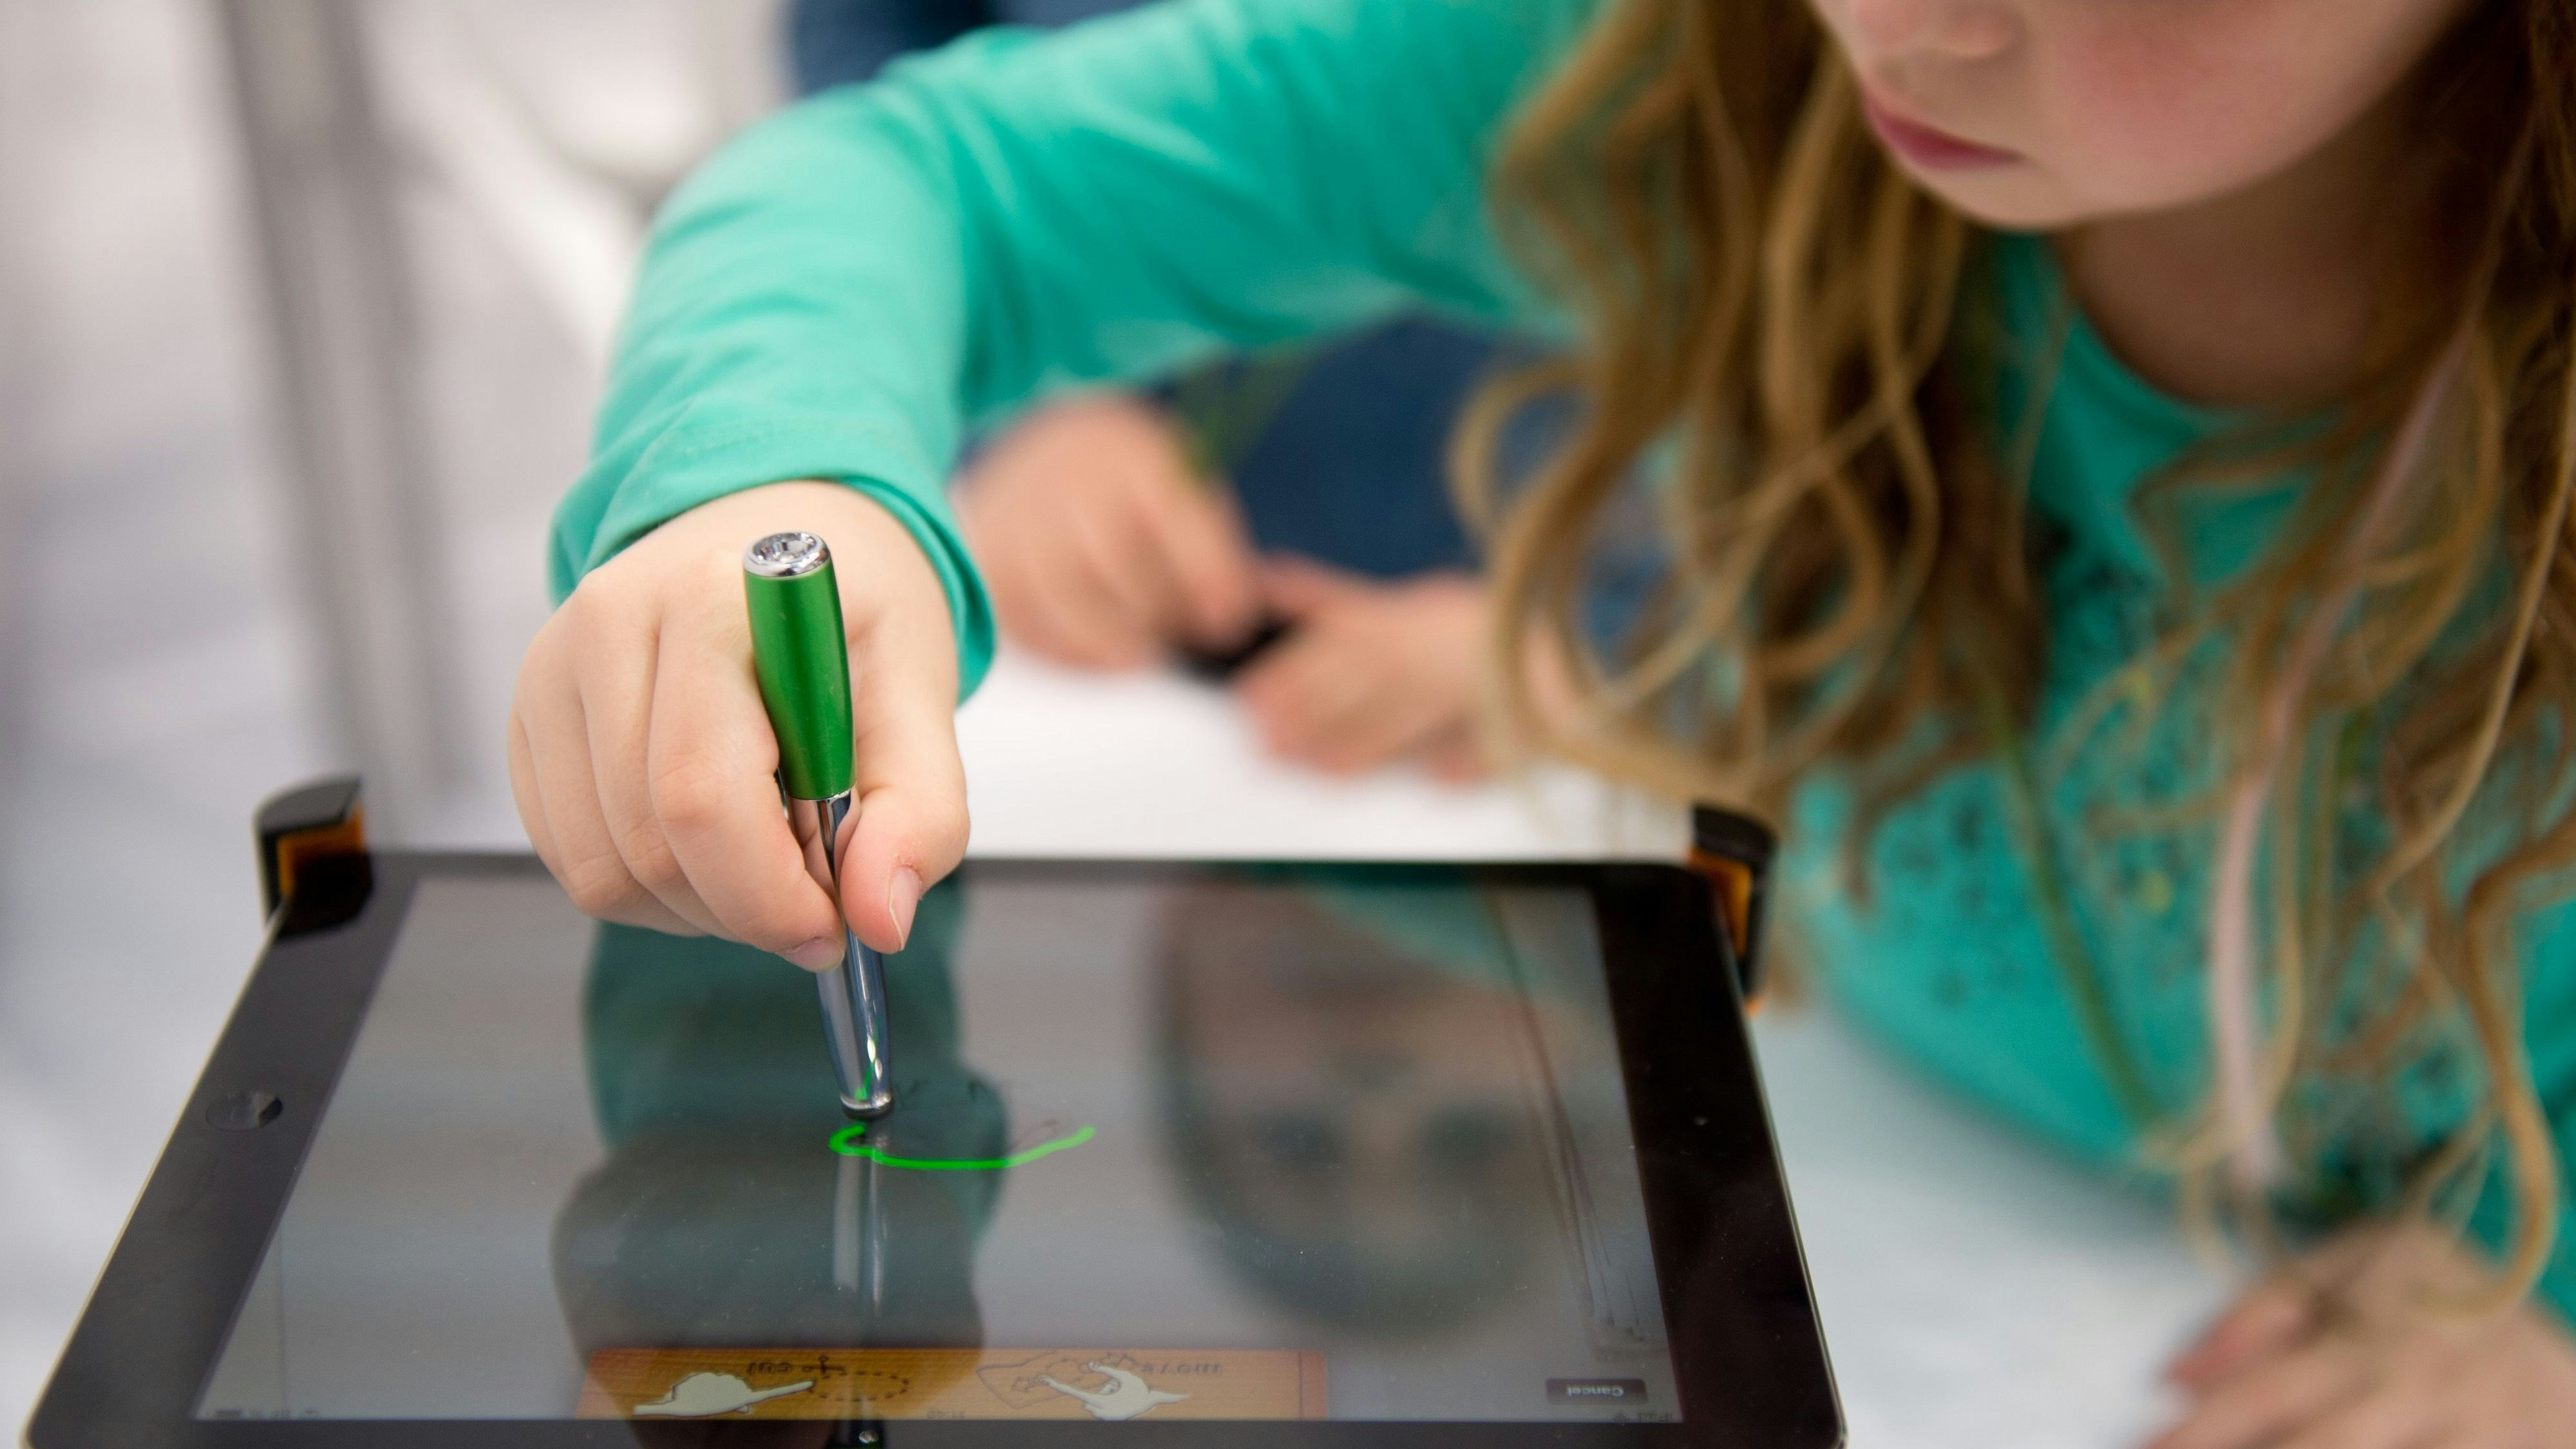 Statt konsumieren: Mit digitalen Medien können auch Kinder schon kreativ umgehen. Foto: dpa